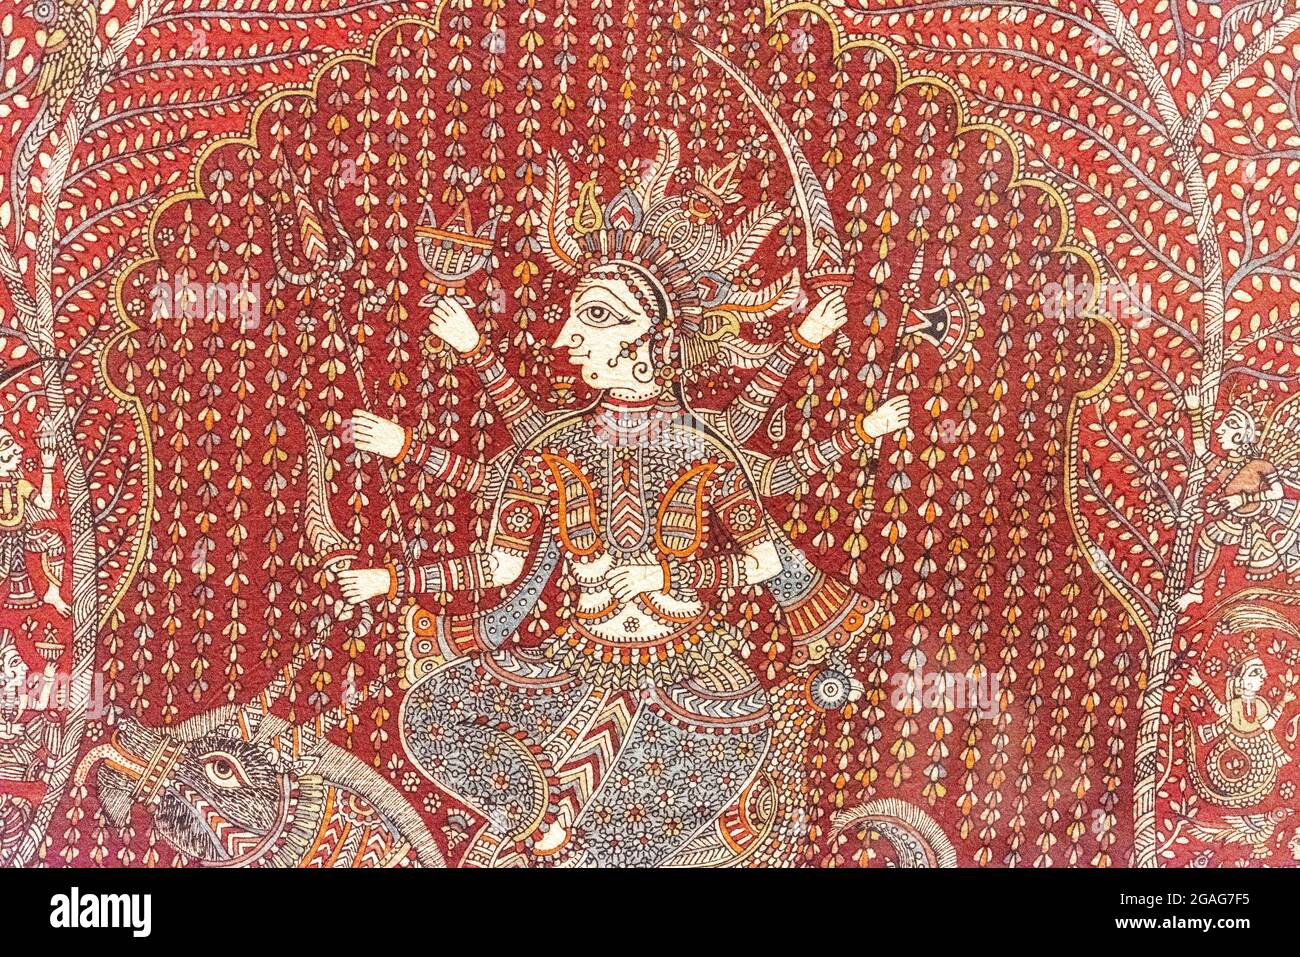 Mostra 'il panno che ha cambiato il mondo: India dipinto e stampato Cottons' al Royal Ontario Museum (ROM) a Toronto, Canada Foto Stock